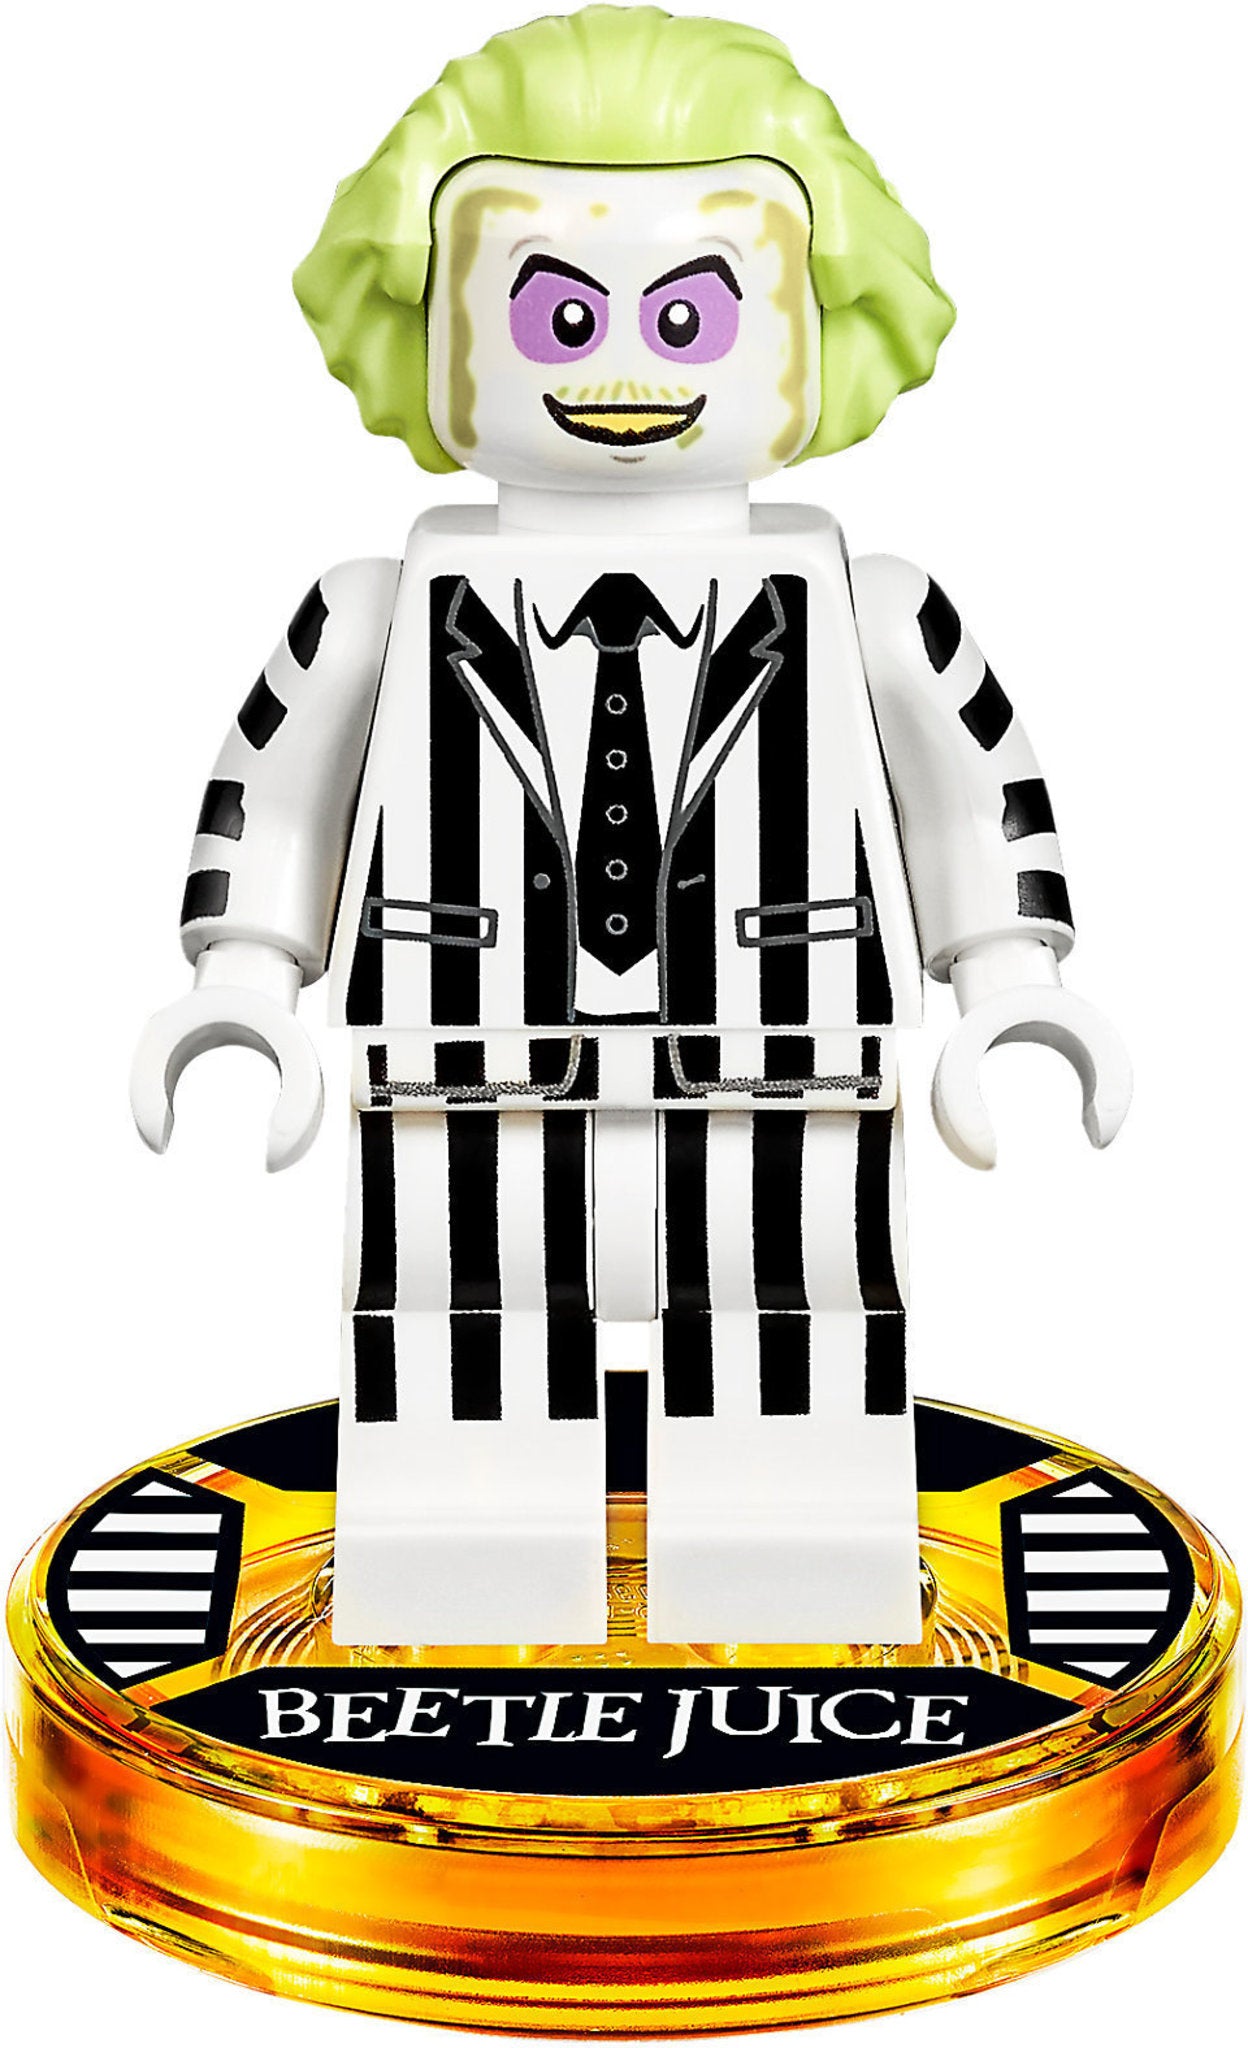 71349 LEGO Dimension - Beetlejuice - Fun Pack: Beetlejuice